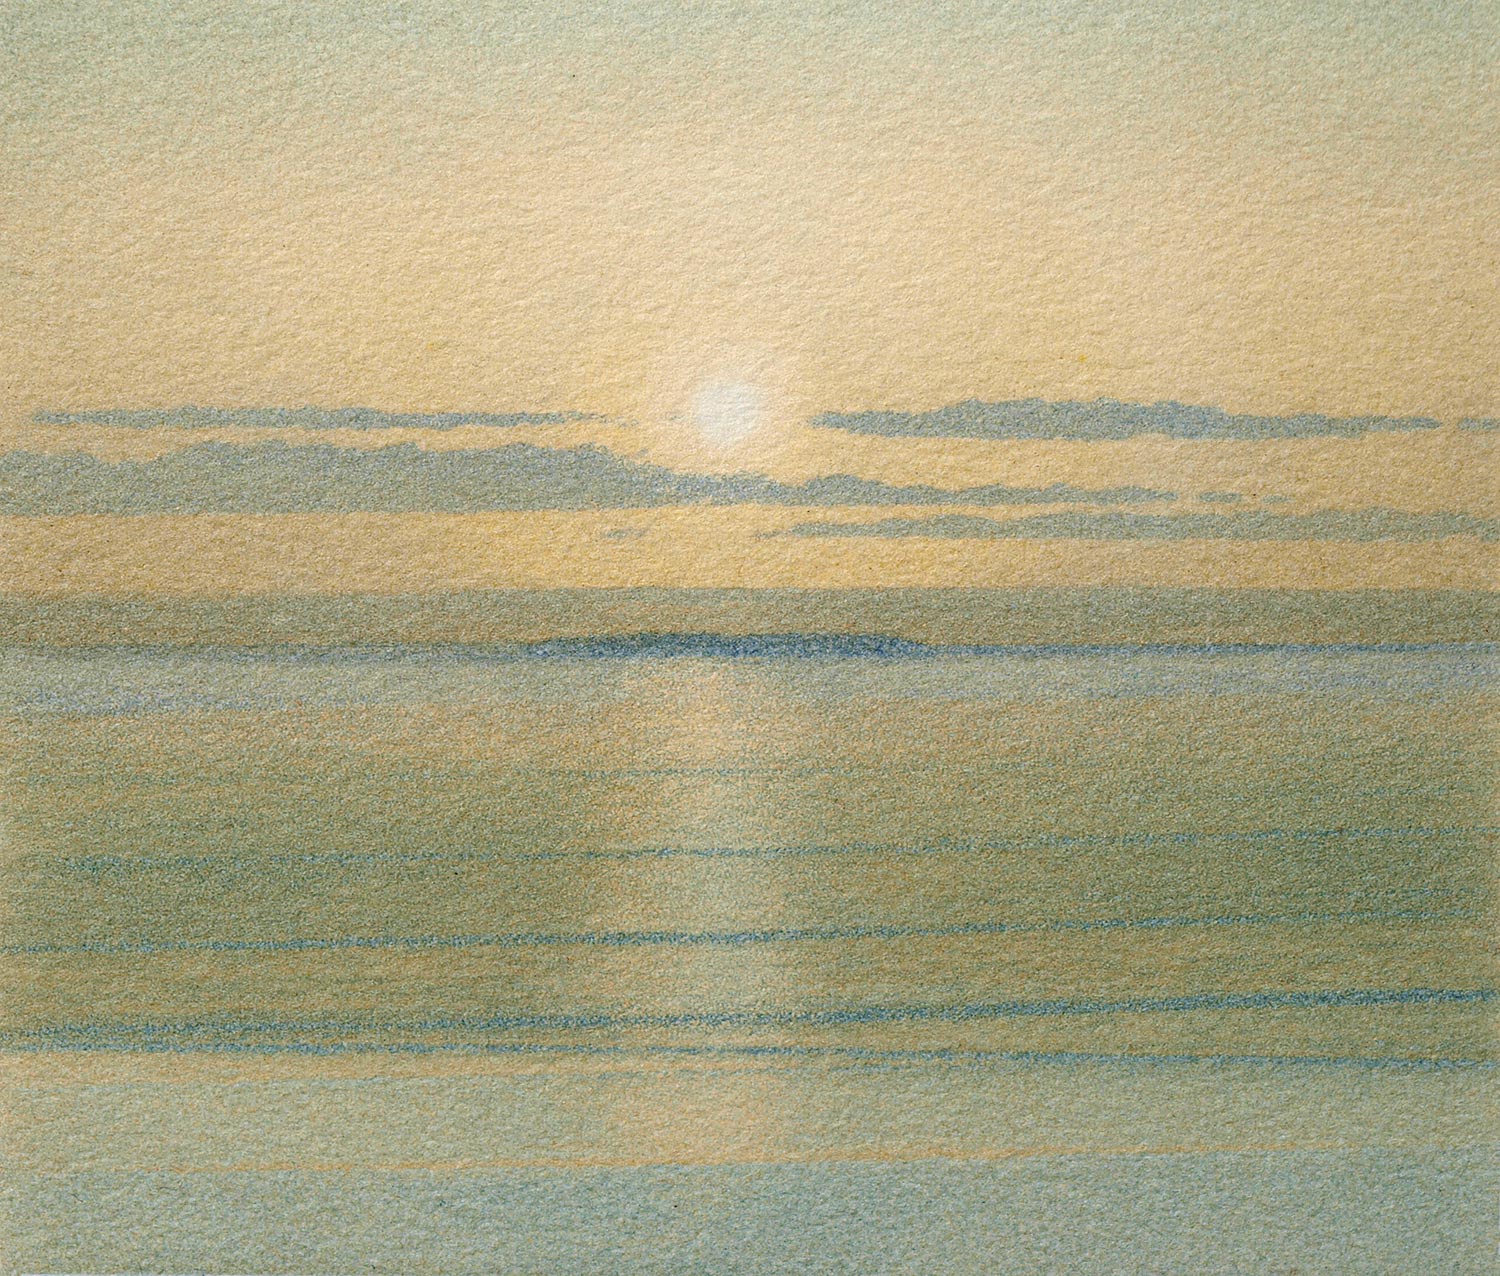 Michael Fairclough 10. THE SEA AND THE ISLAND I (SKOKHOLM)